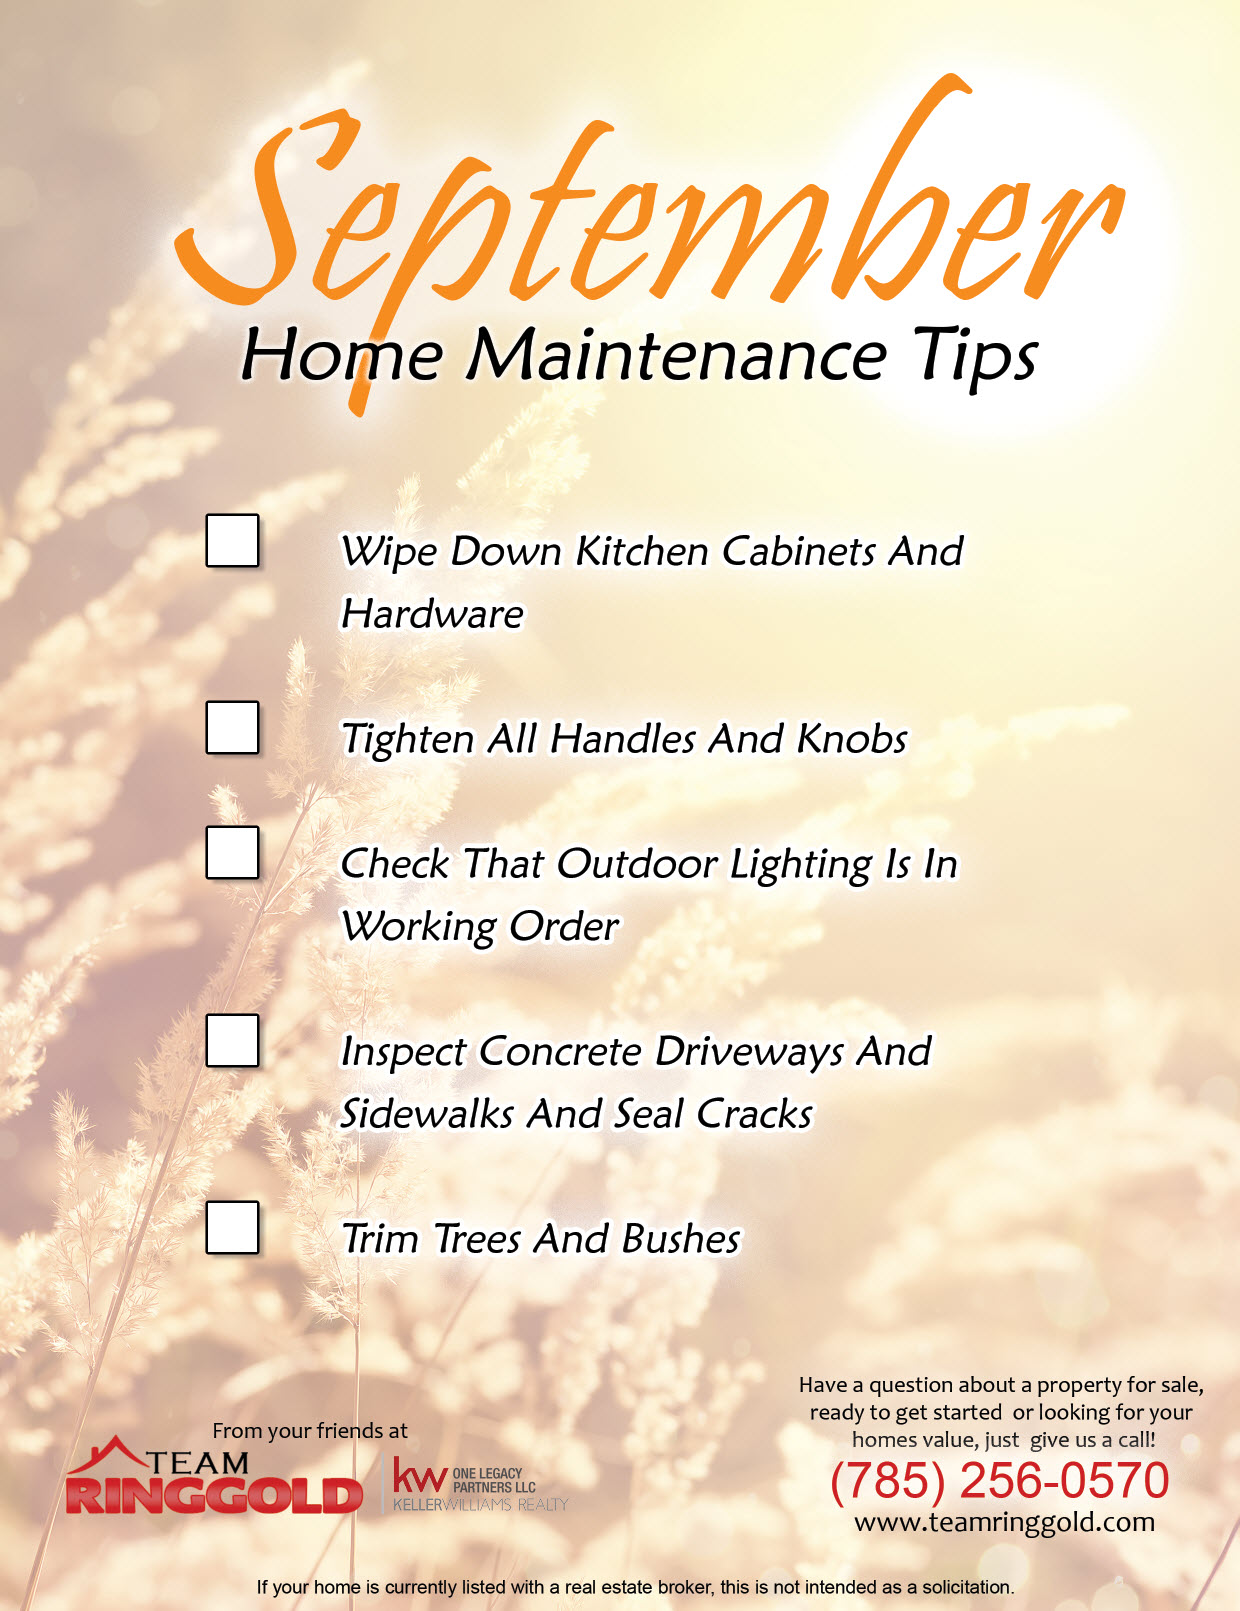 Home Maintenance Tips | September